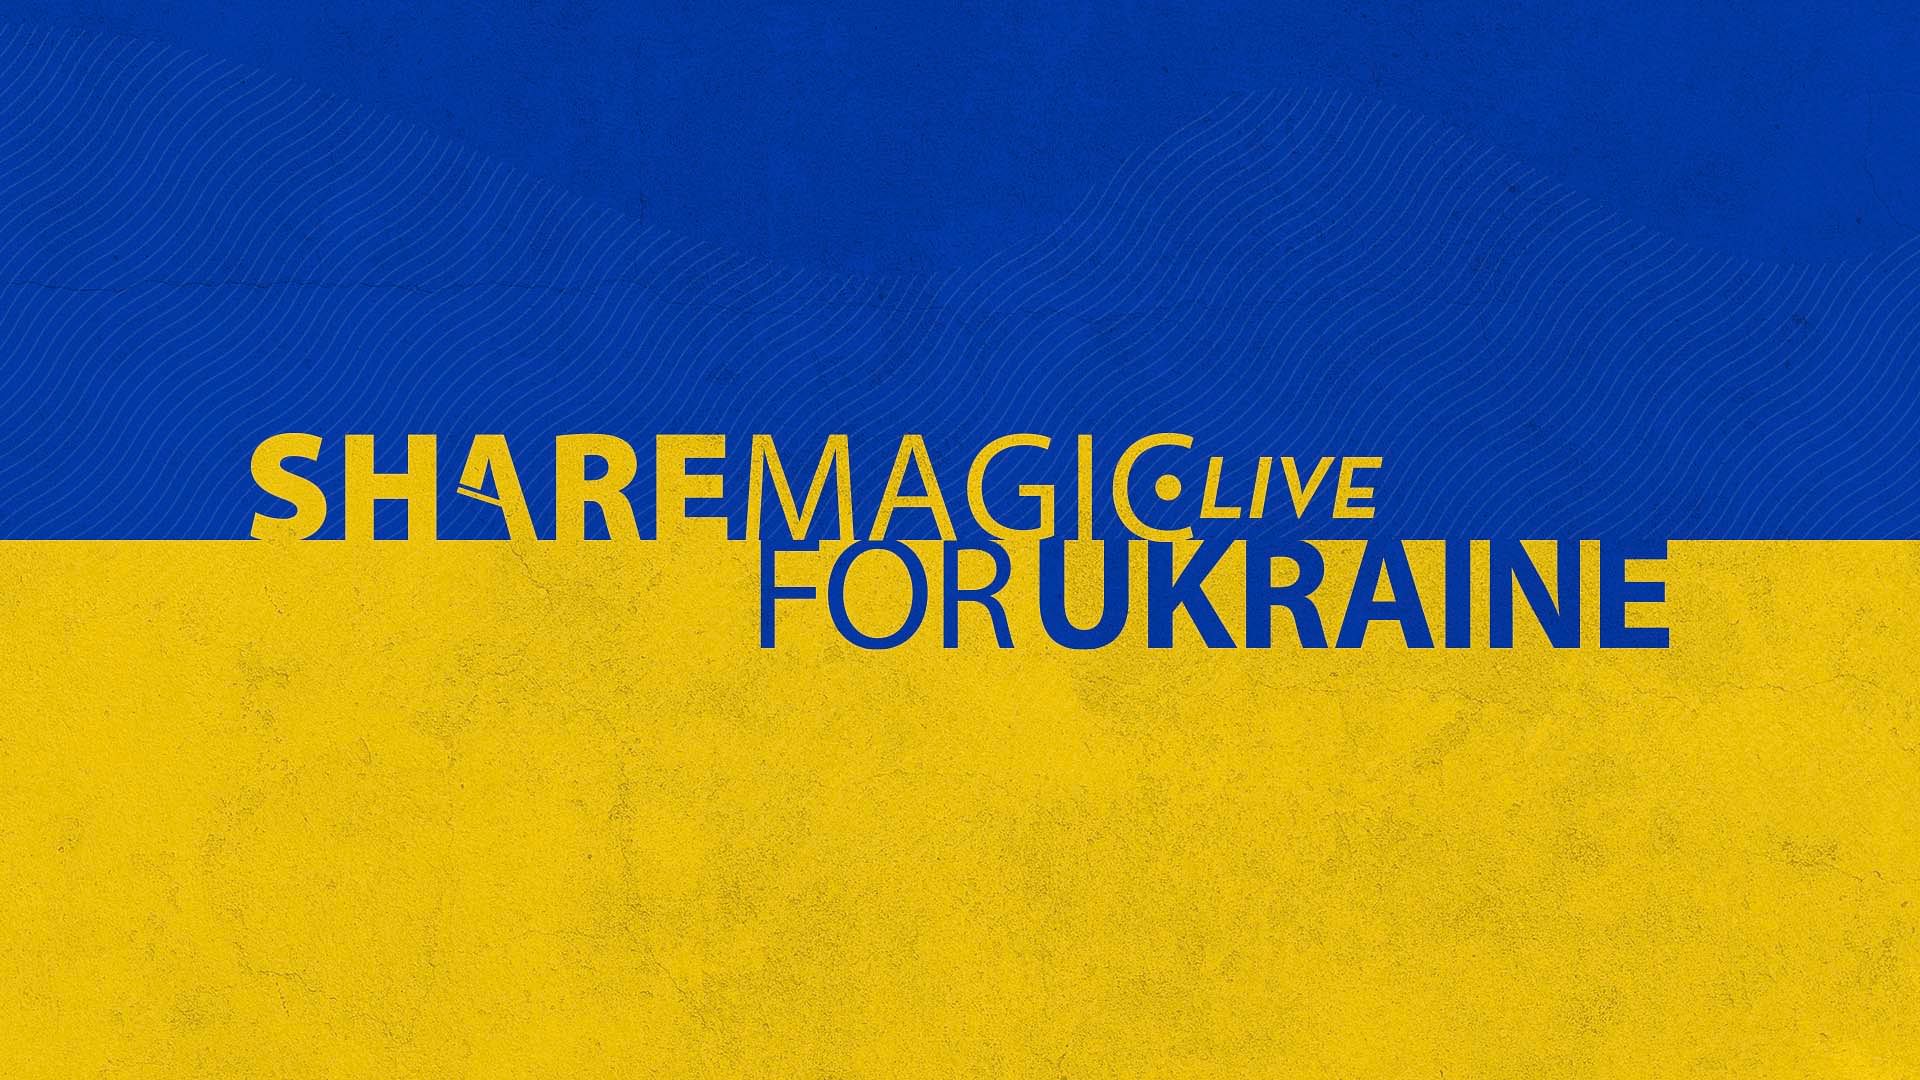 ShareMagic for Ukraine